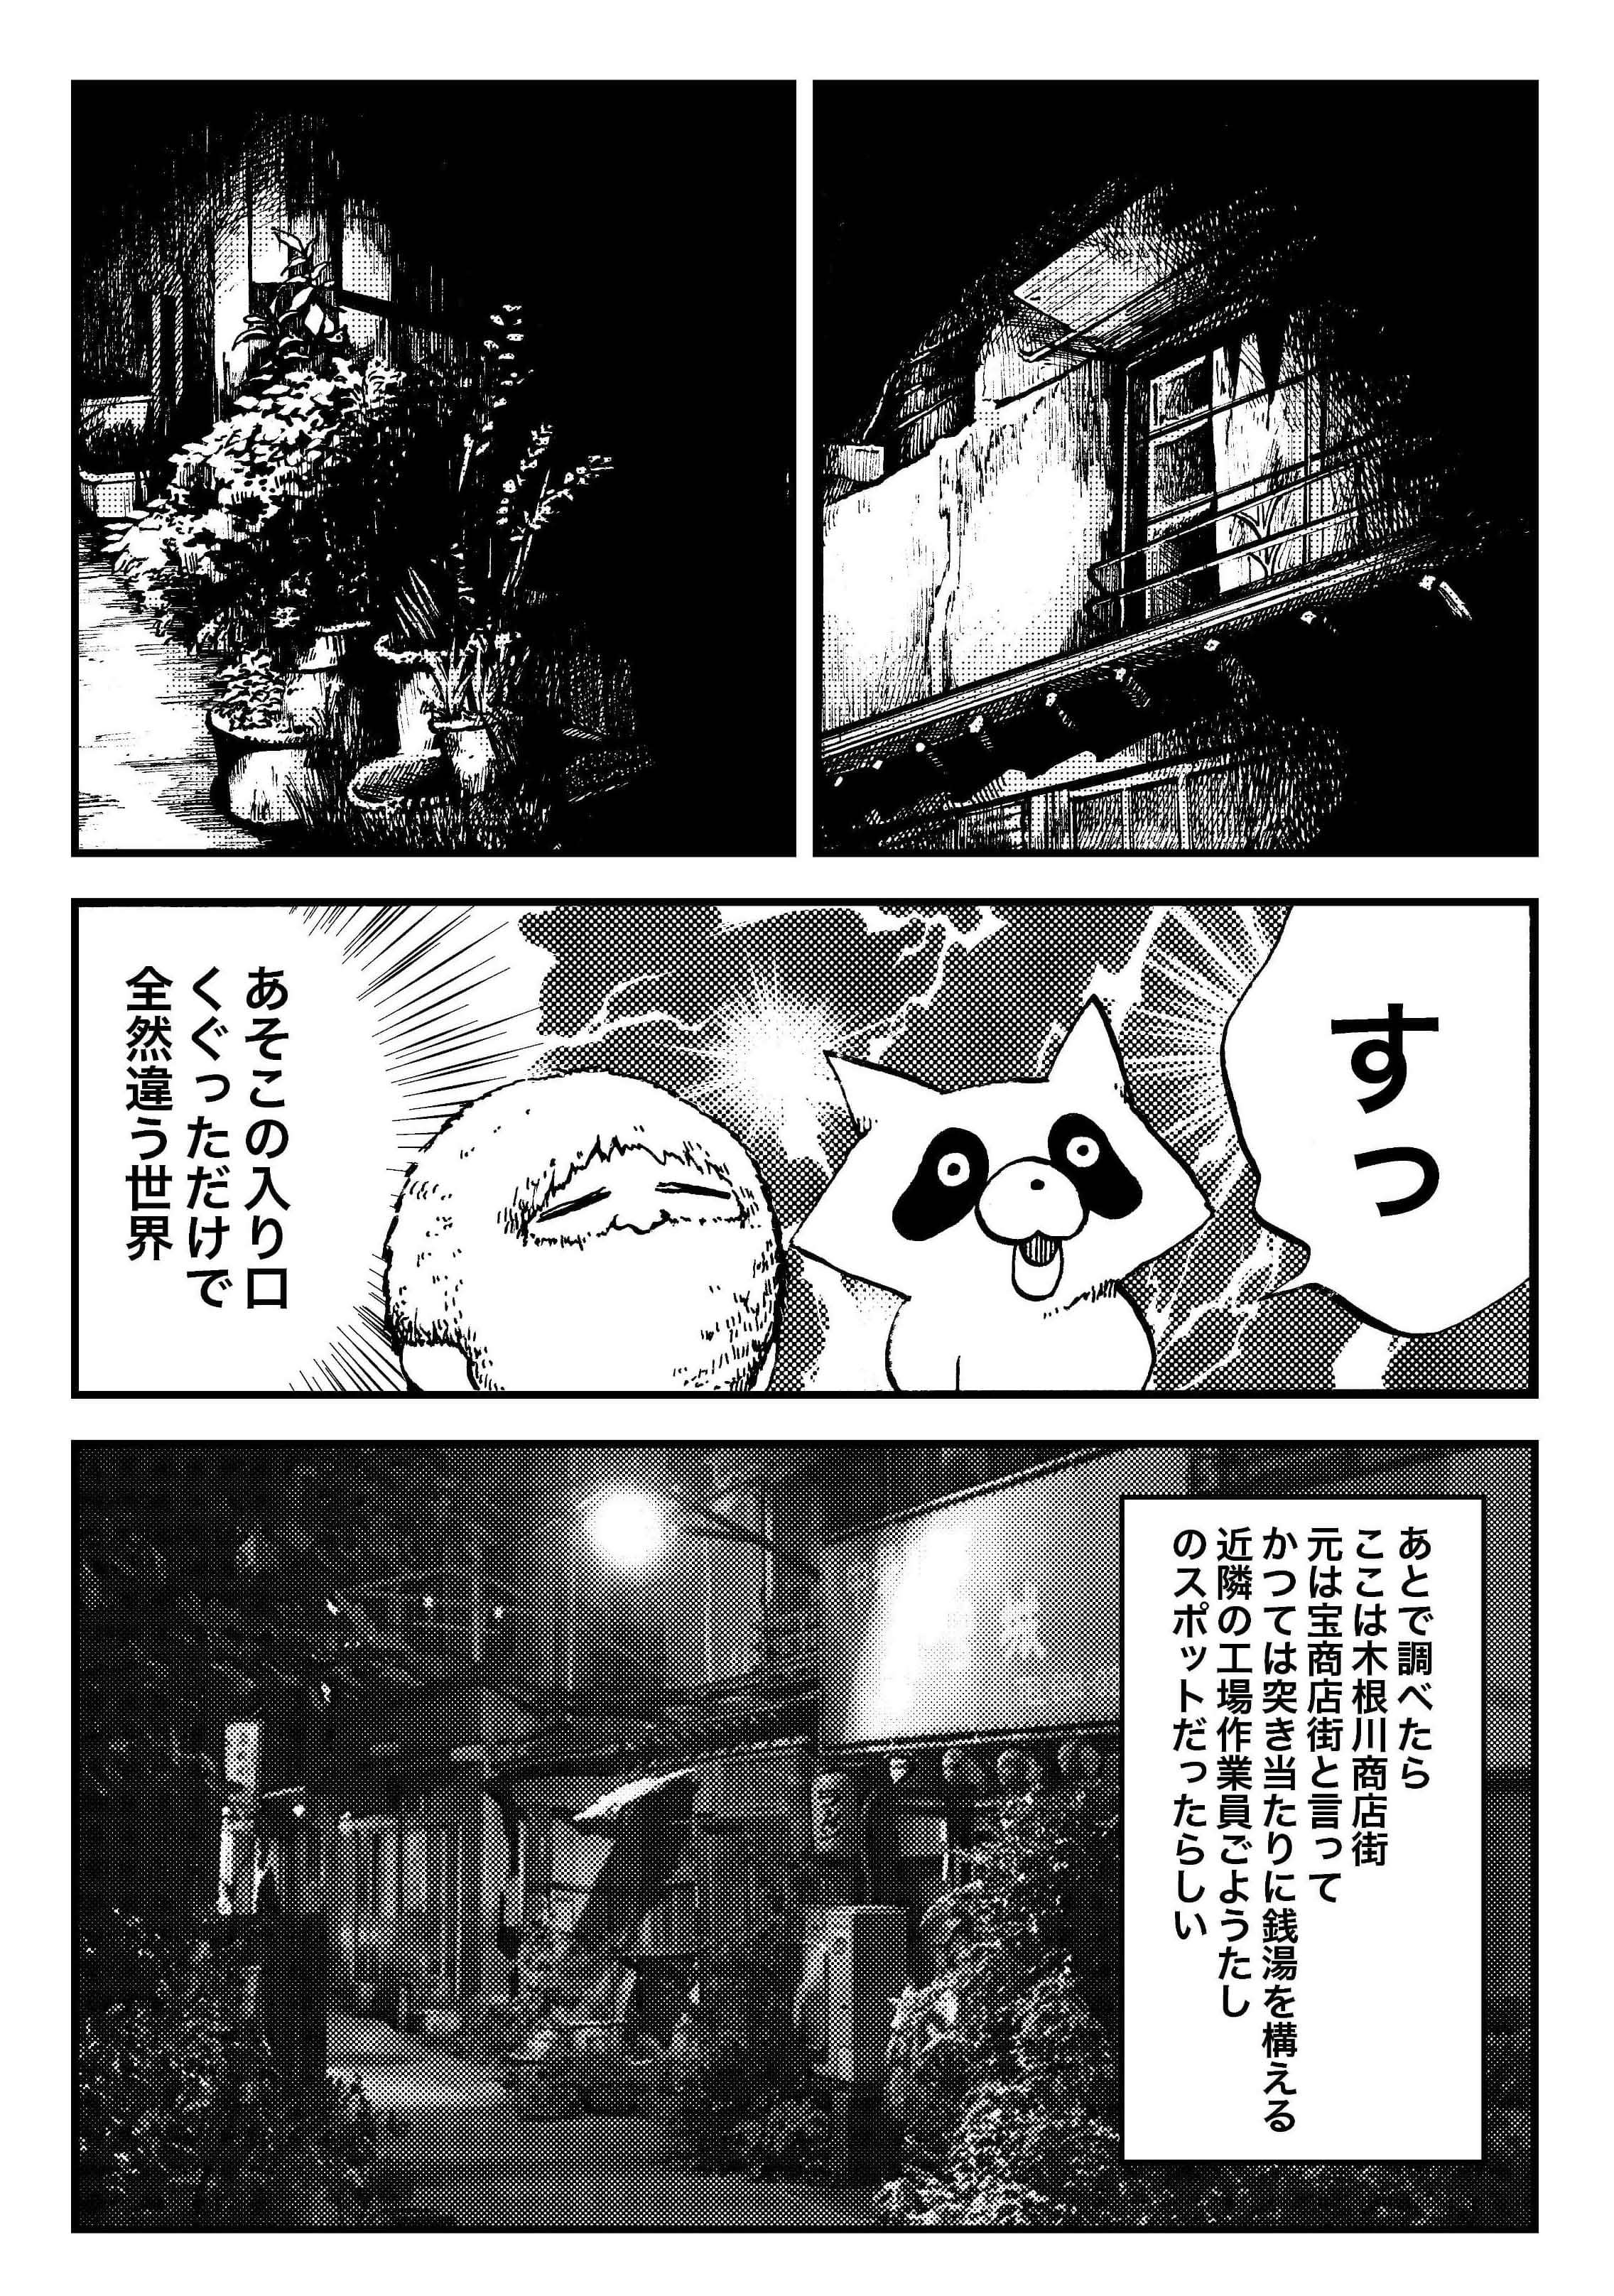 『夜活～夜の街を散歩した日記漫画～』／森凡 １３.jpg